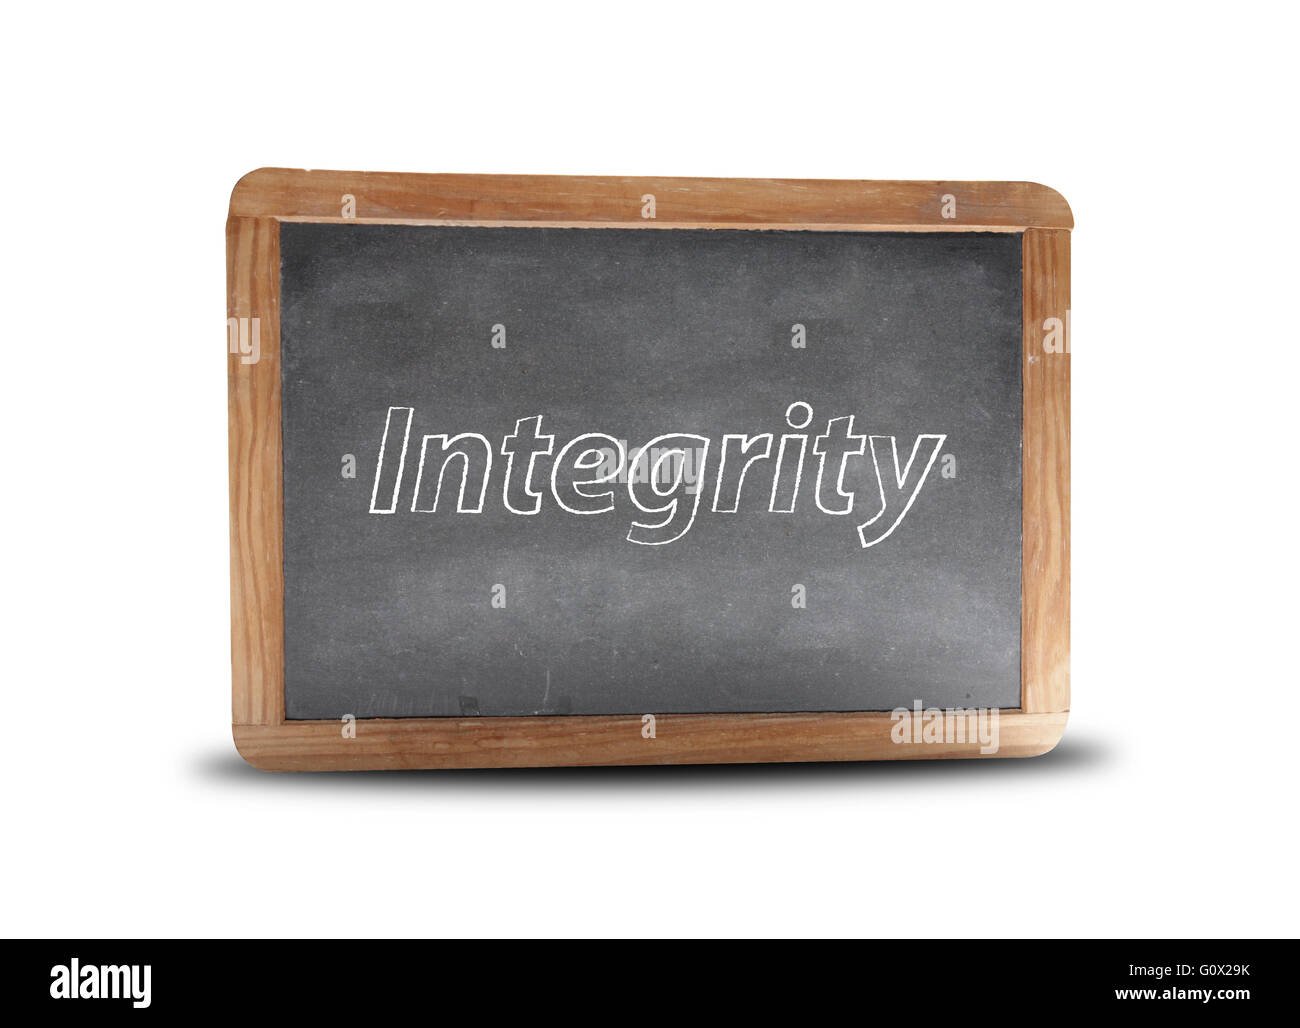 Integrity written on a blackboard Stock Photo